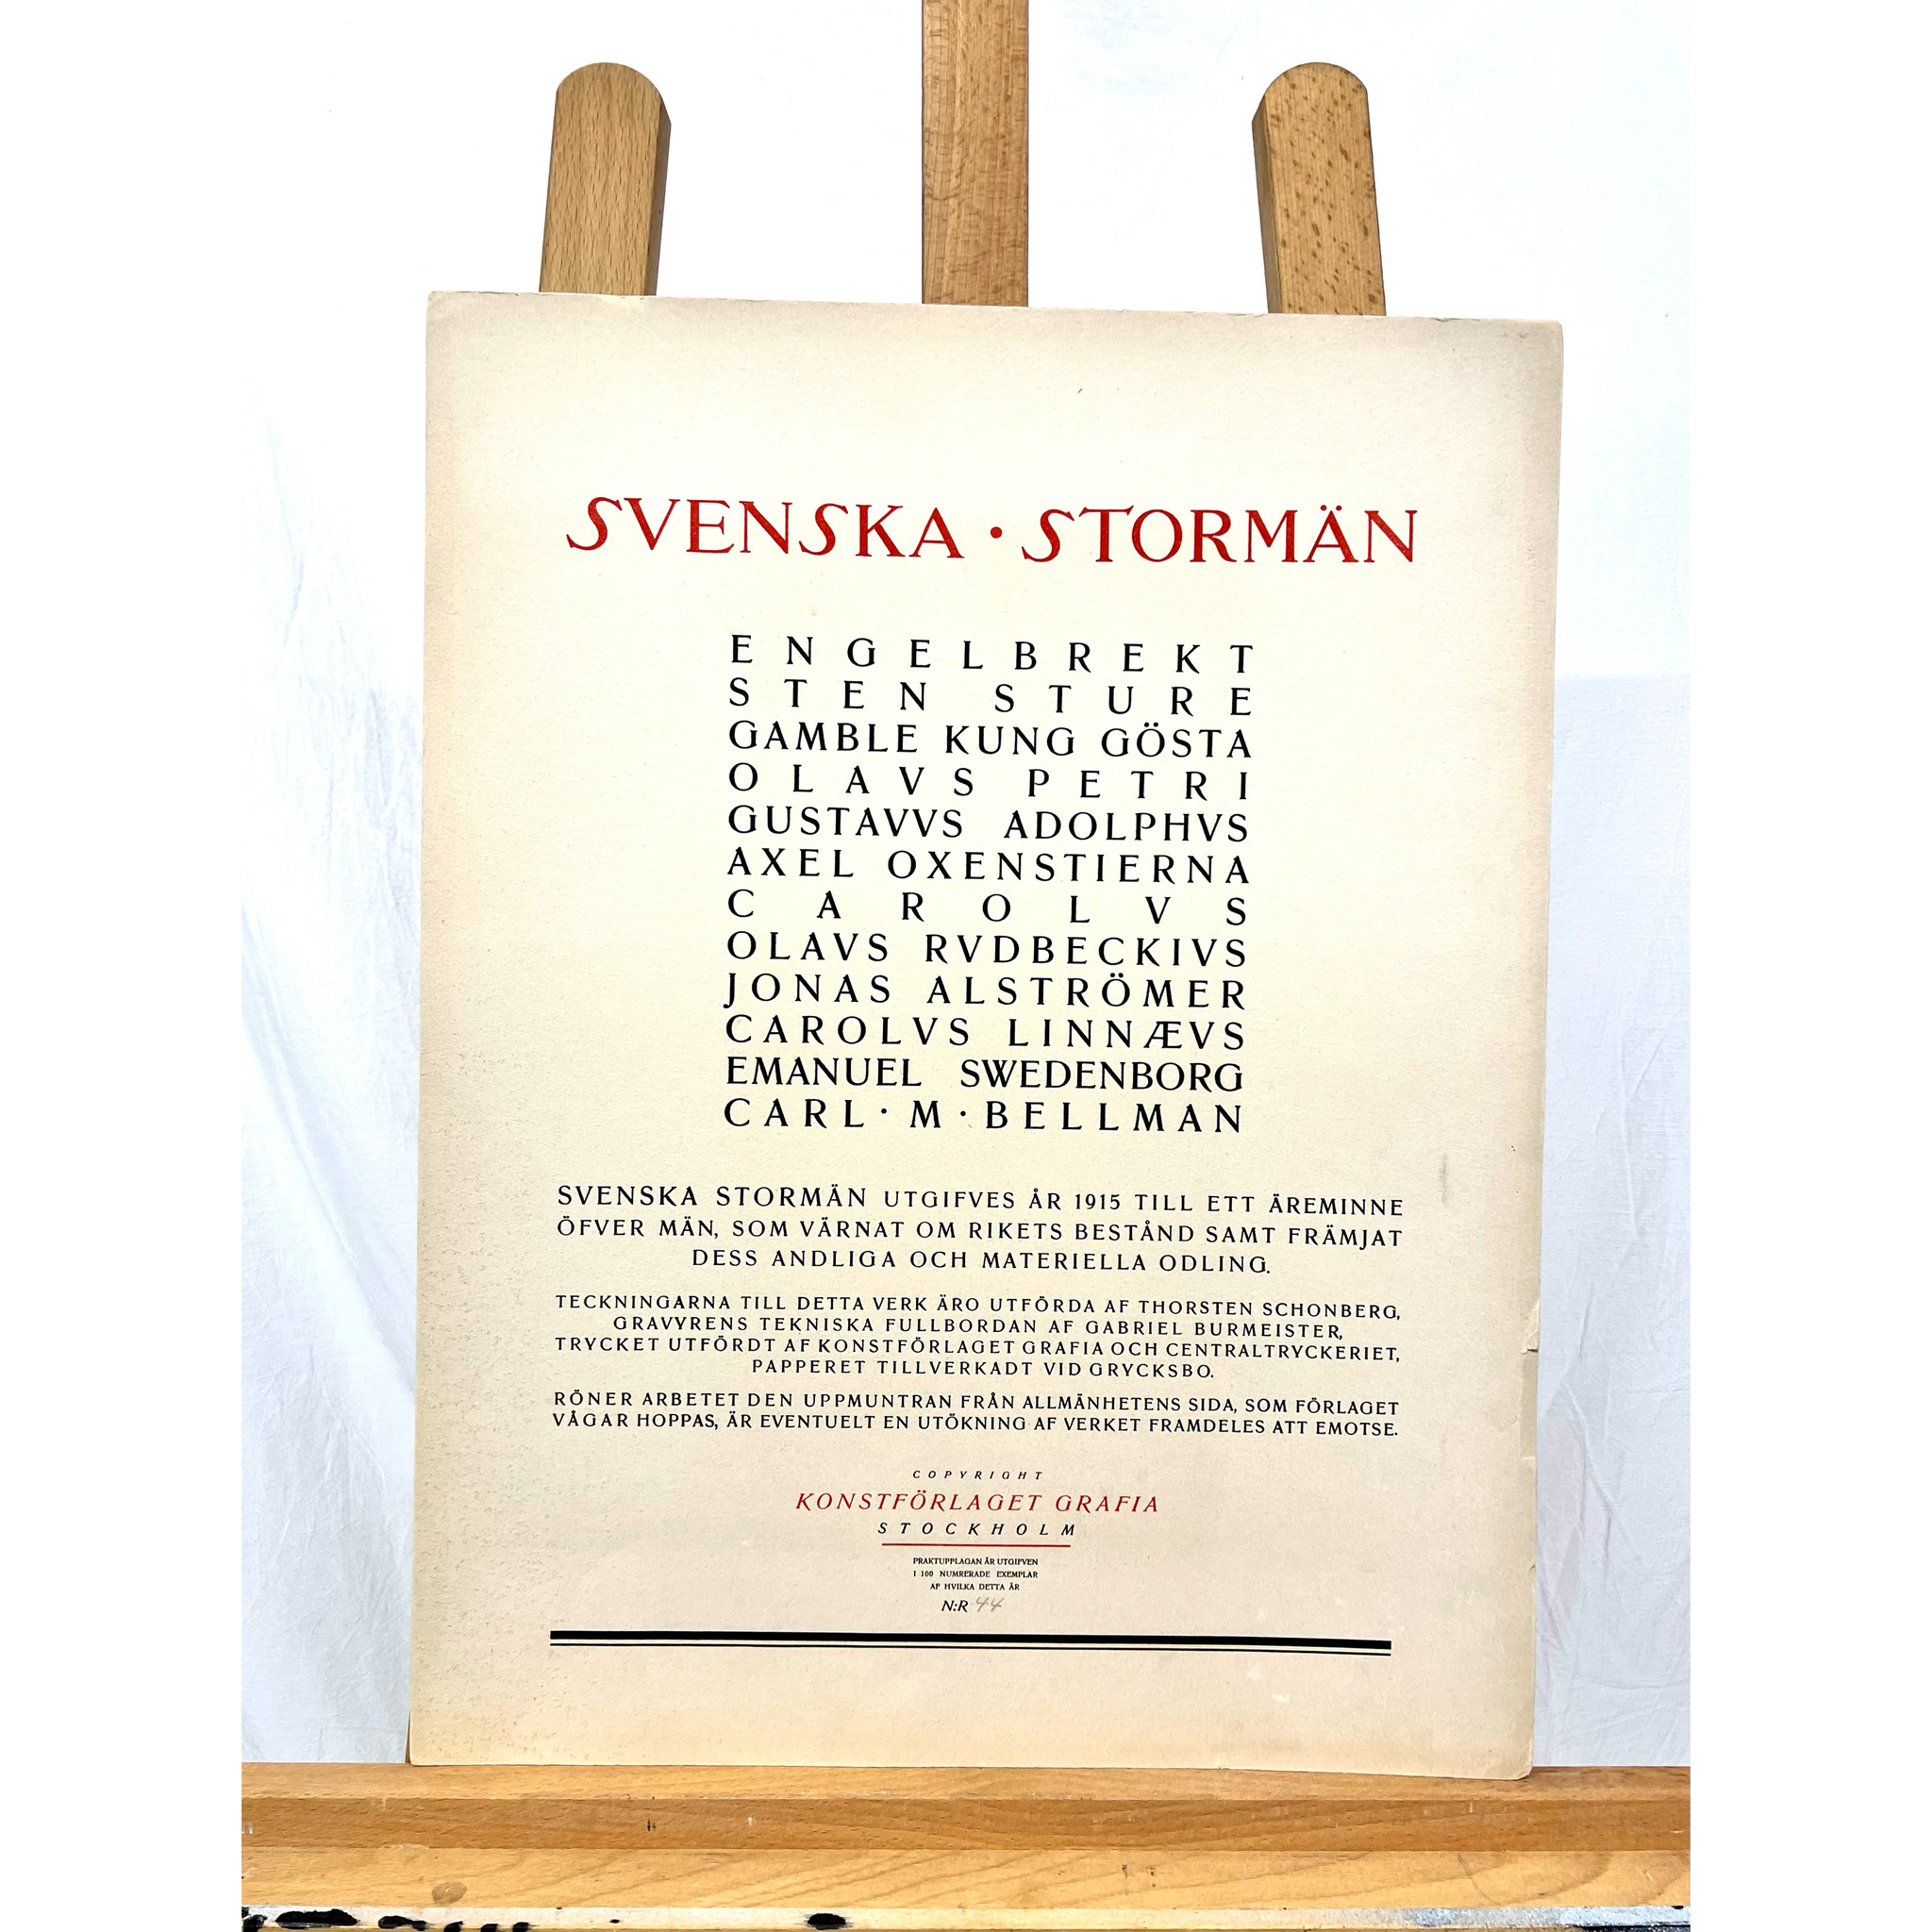 "Olavs Rudbeckivs" Grafisk blad av Thorsten Schonberg ur mappen "Svenska Stormän". Nr 44/100. 40x52 cm